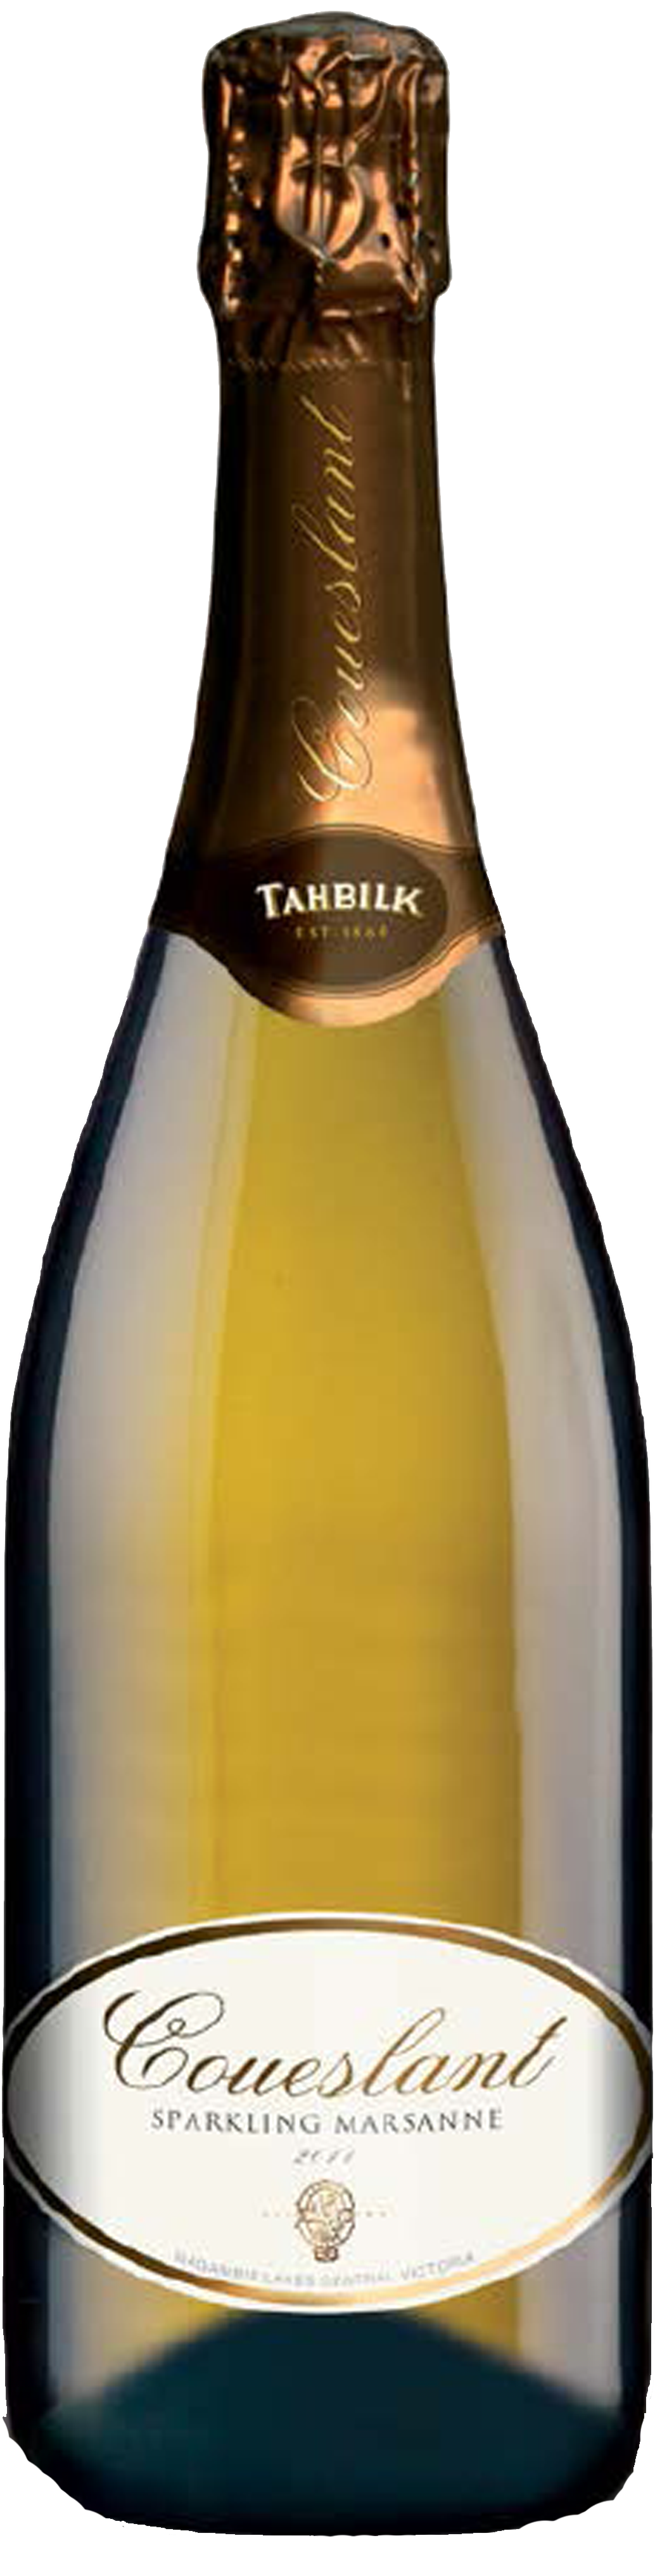 Bottle shot of 2011 Sparkling Marsanne